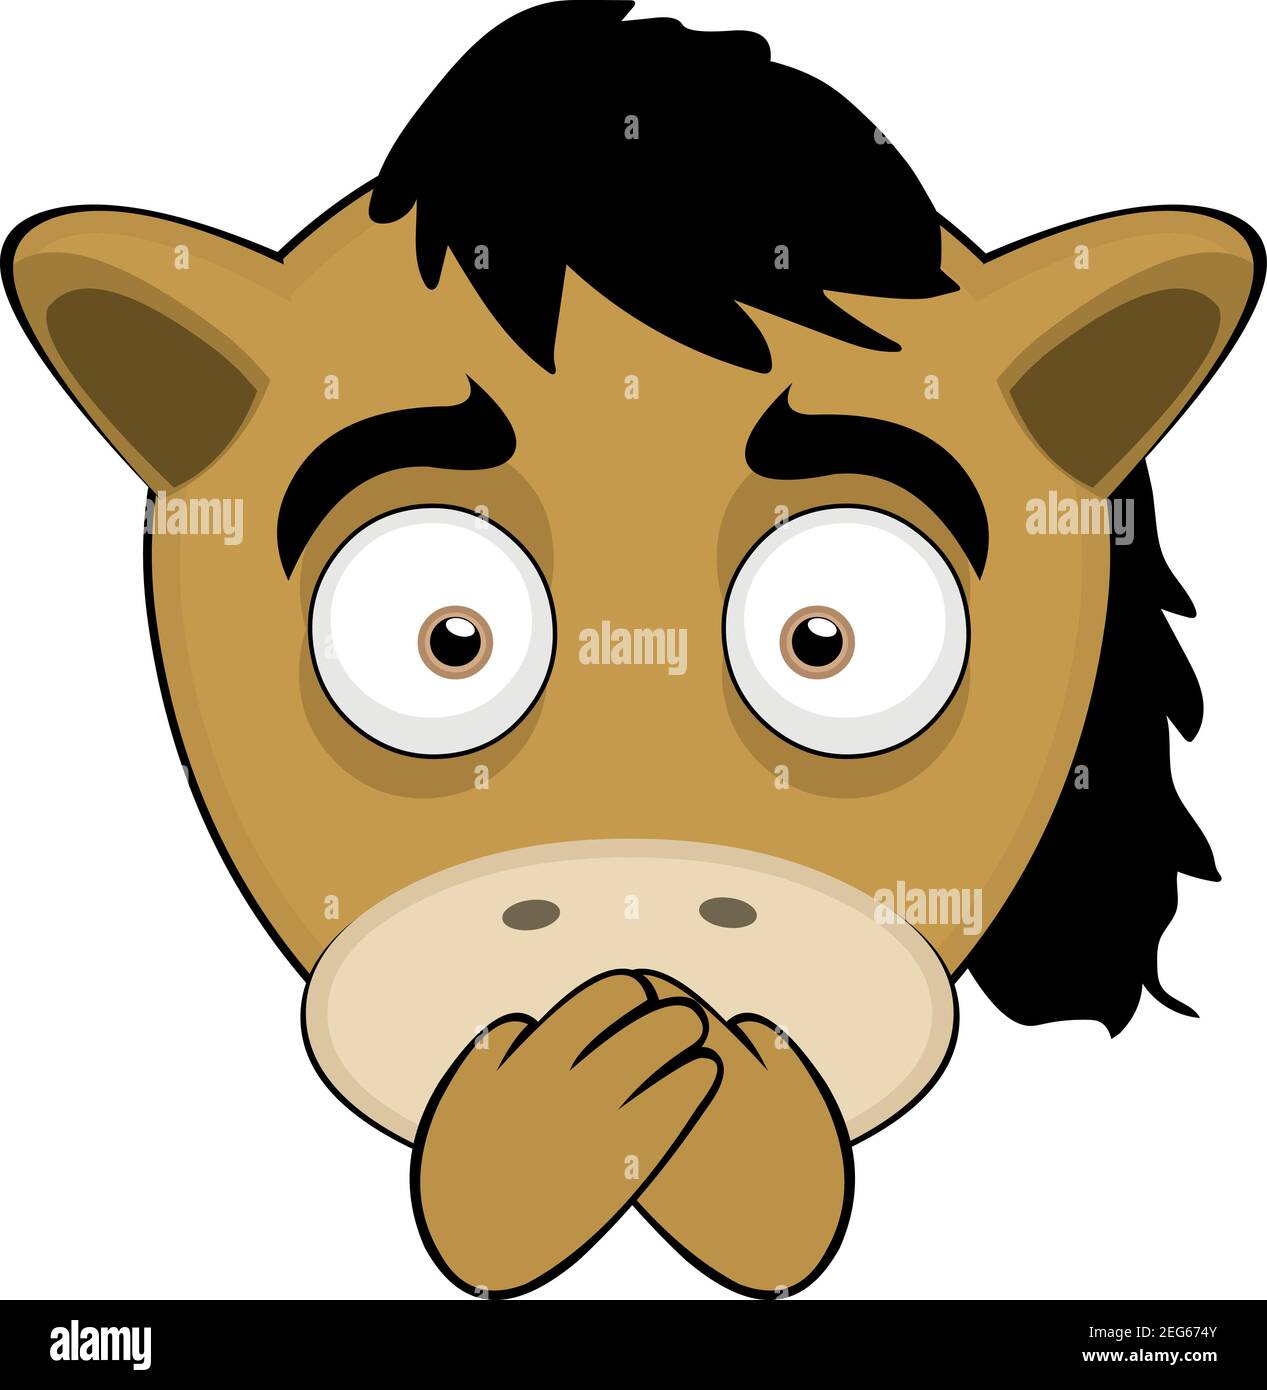 Vecteur émoticône illustration dessin animé d'une tête de poney avec deux bandes croisées sur sa bouche, concept de silence Illustration de Vecteur